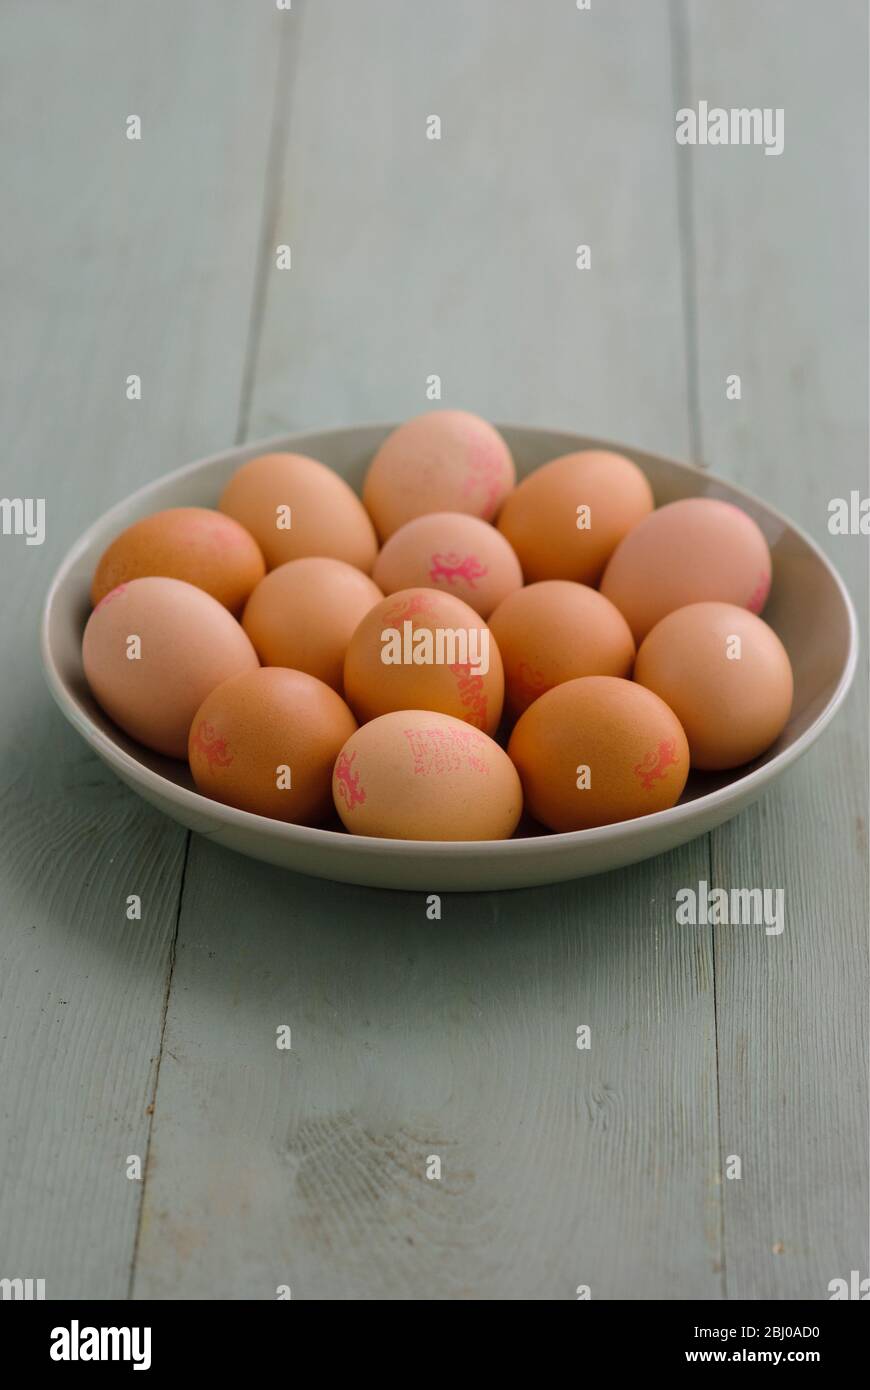 Schale mit braunen Eiern auf lackierter Oberfläche - Stockfoto